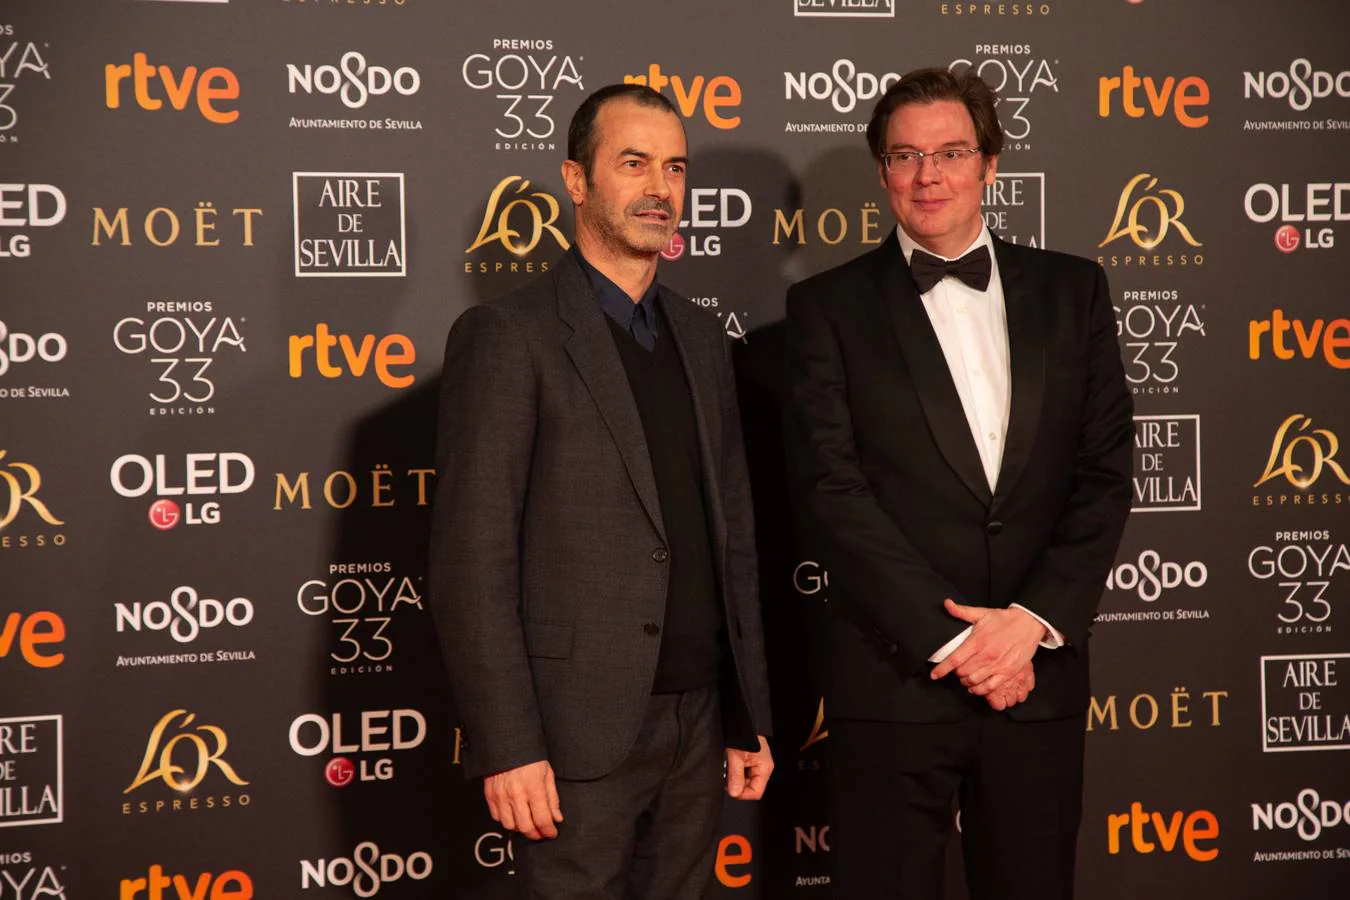 Premios Goya 2019: El cine se viste de gala en Sevilla (I)